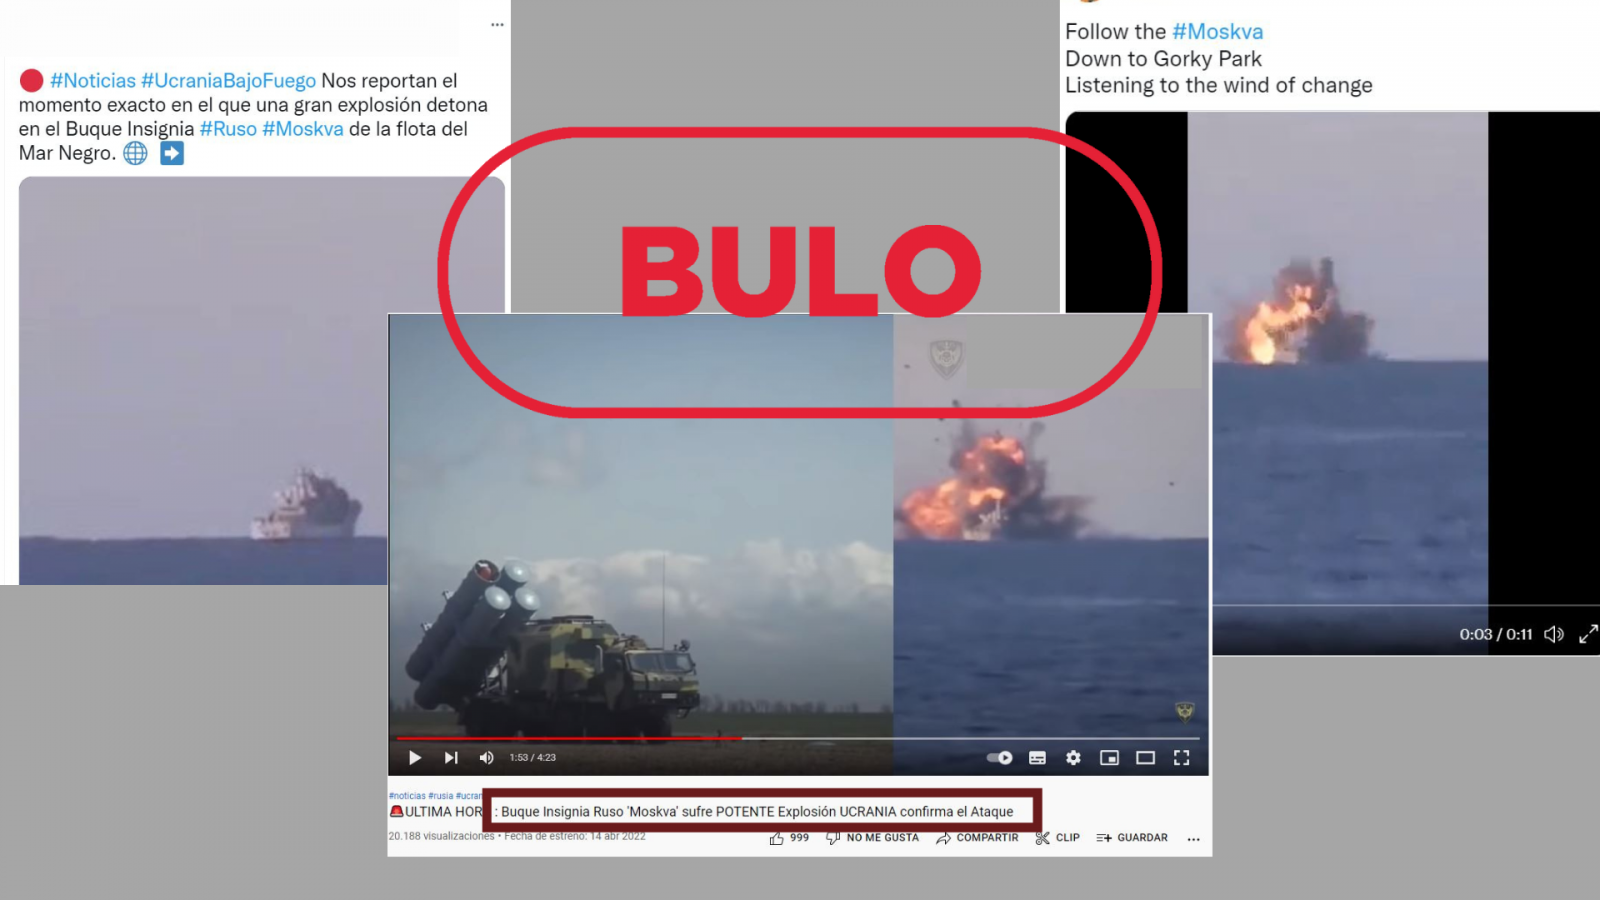 Imágenes de tres mensajes en redes que hacen referencia a la explosión de buque insignia ruso Moskva, con el sello de bulo de VerificaRTVE en rojo